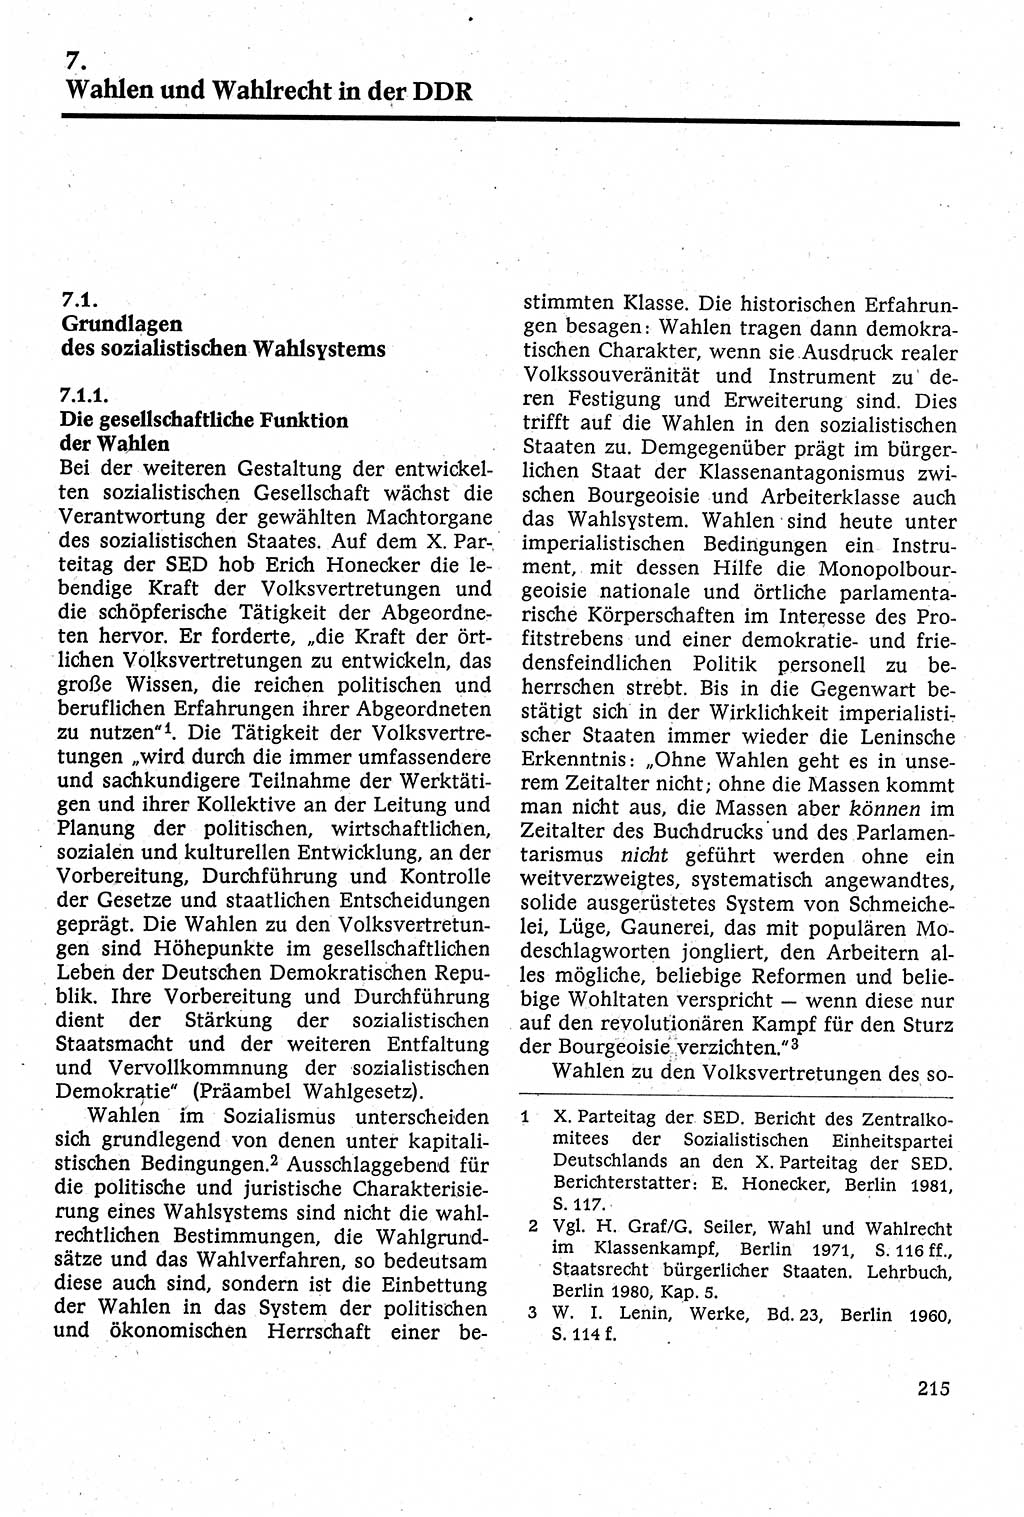 Staatsrecht der DDR [Deutsche Demokratische Republik (DDR)], Lehrbuch 1984, Seite 215 (St.-R. DDR Lb. 1984, S. 215)